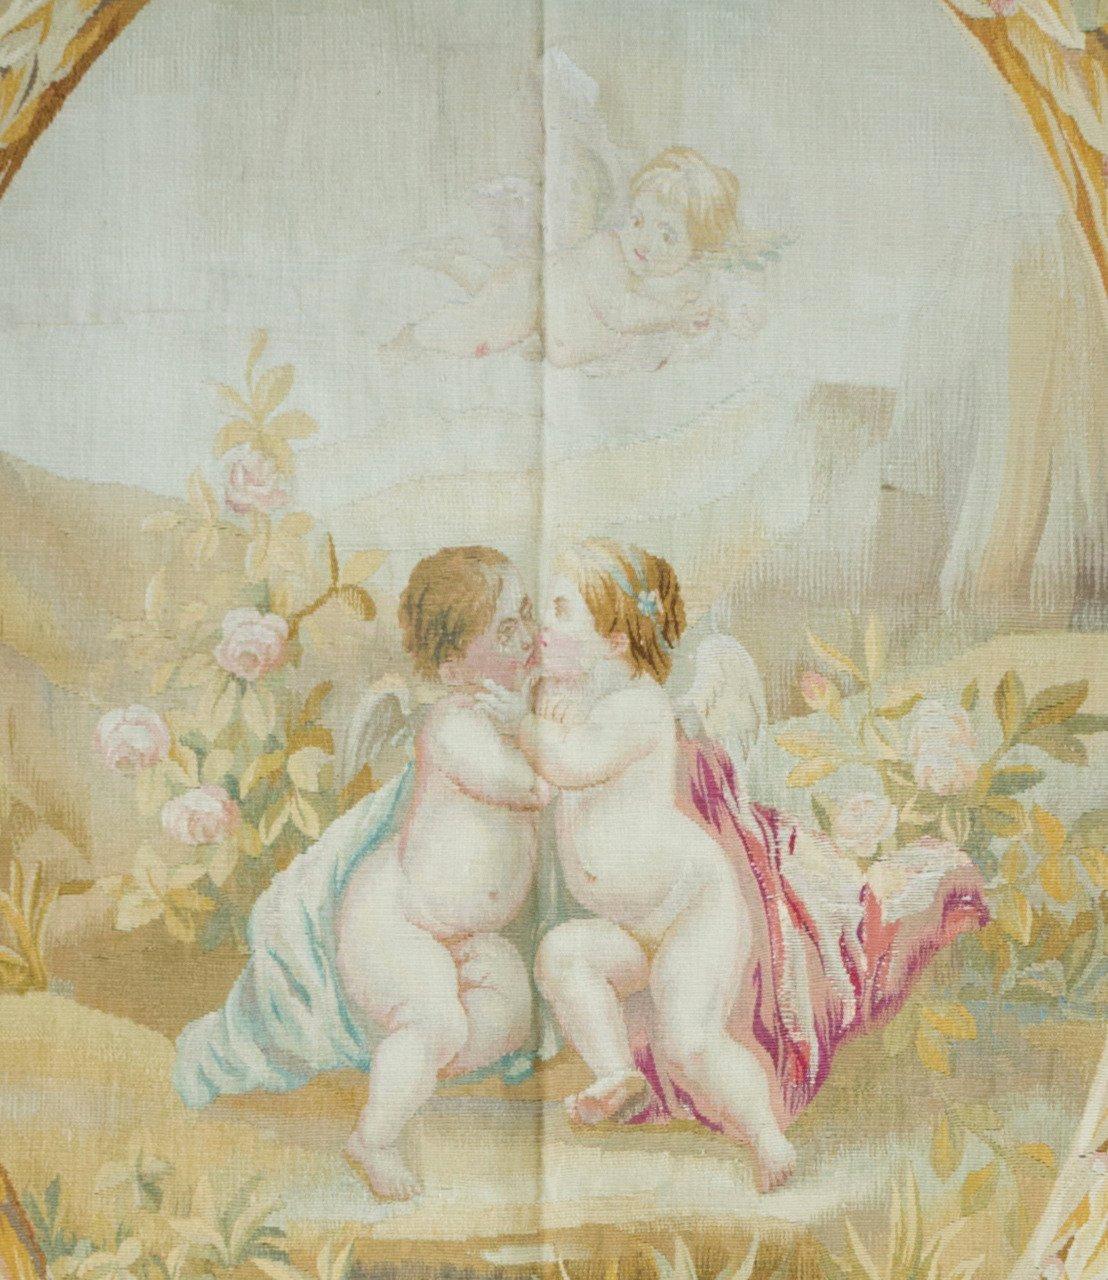 Il s'agit d'une très belle tapisserie d'Aubusson ancienne du 19ème siècle, de forme carrée, en ivoire et ornée de fleurs. Il est orné de guirlandes florales et d'une fenêtre ovale donnant sur une scène d'amour avec Cupidon volant au-dessus. Il est